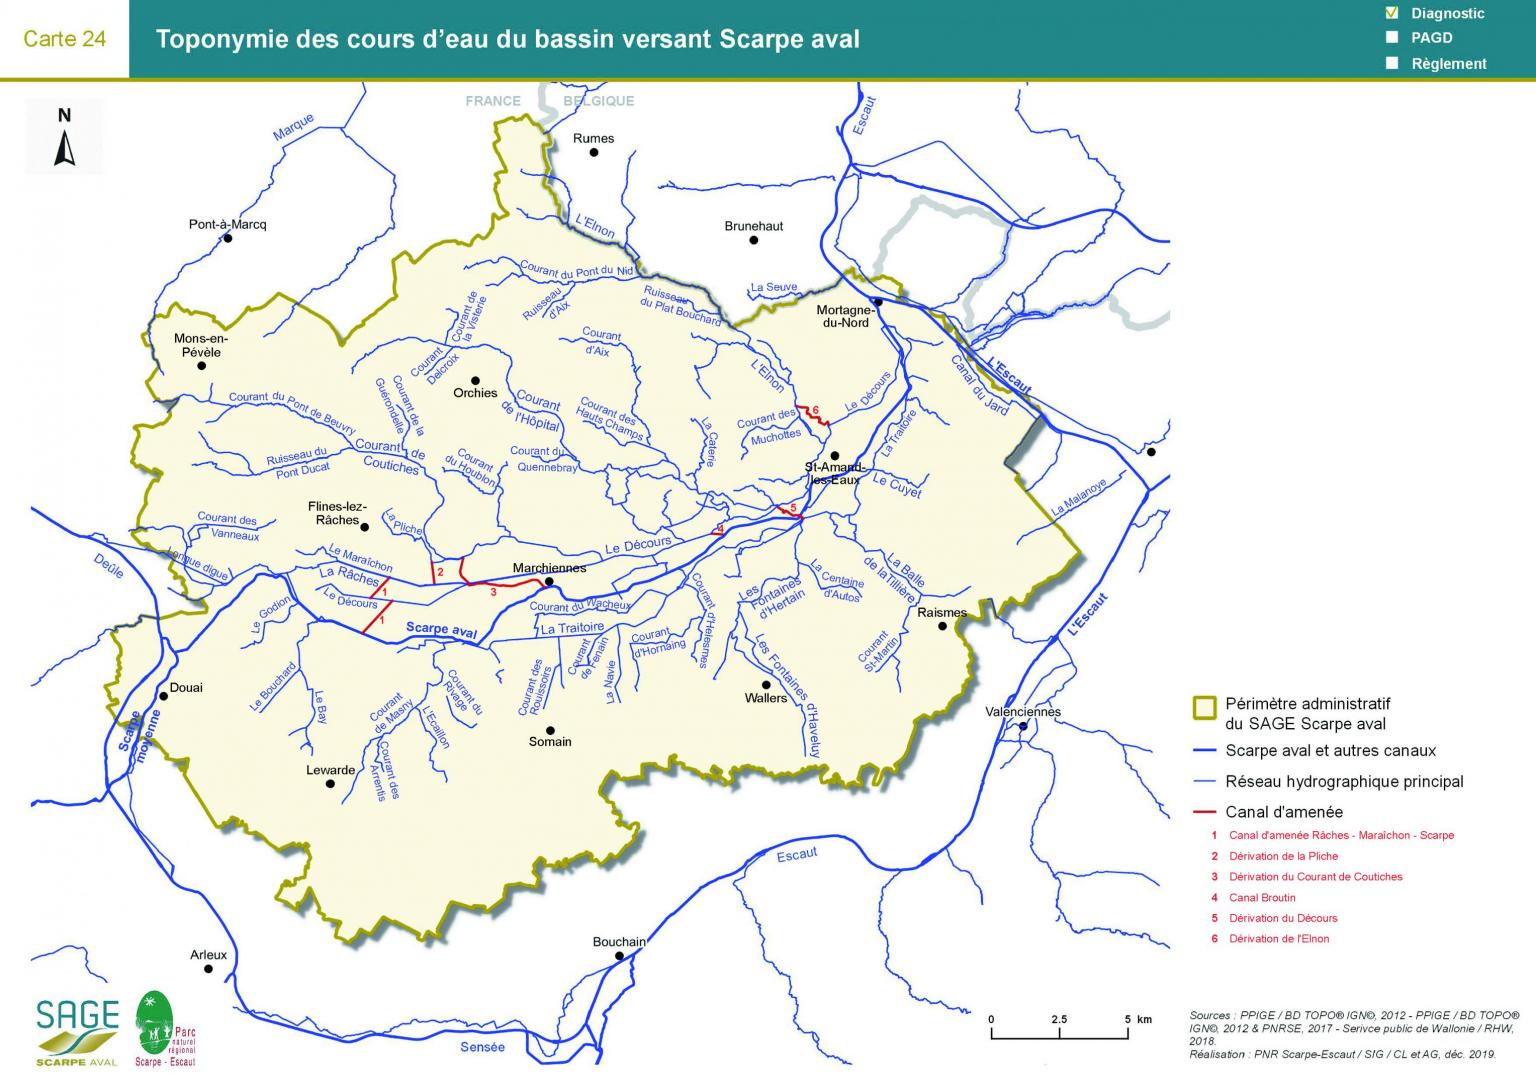 Etat des lieux - Carte 24 : Toponymie des cours d’eau du bassin versant Scarpe aval